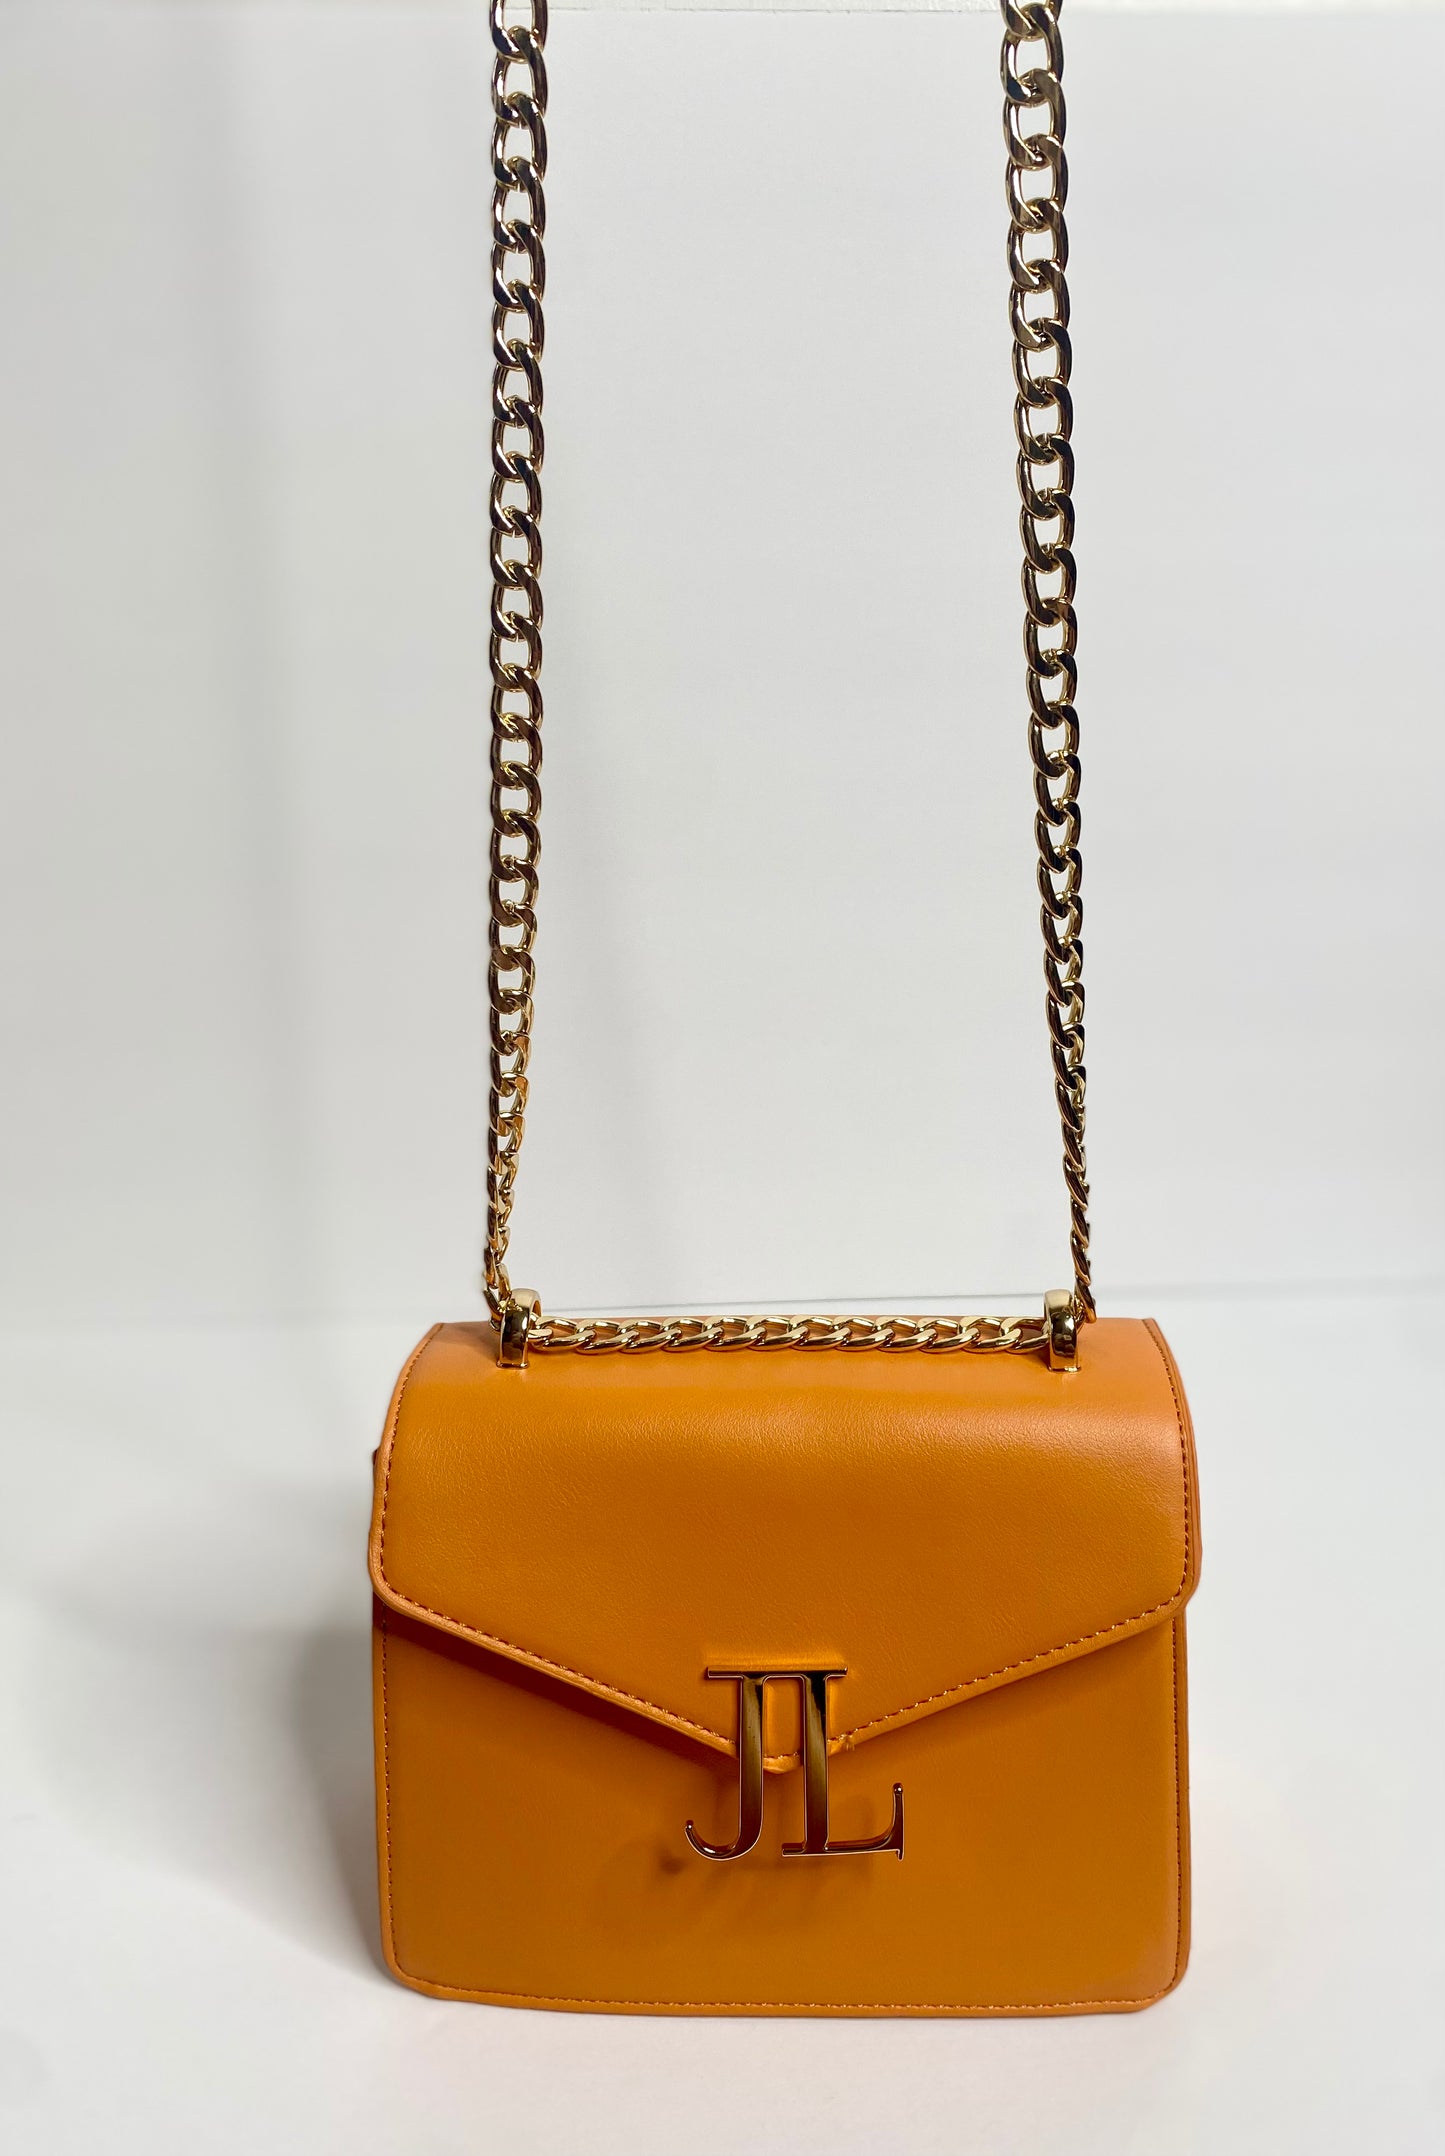 Orange Signature Chain JL Bag